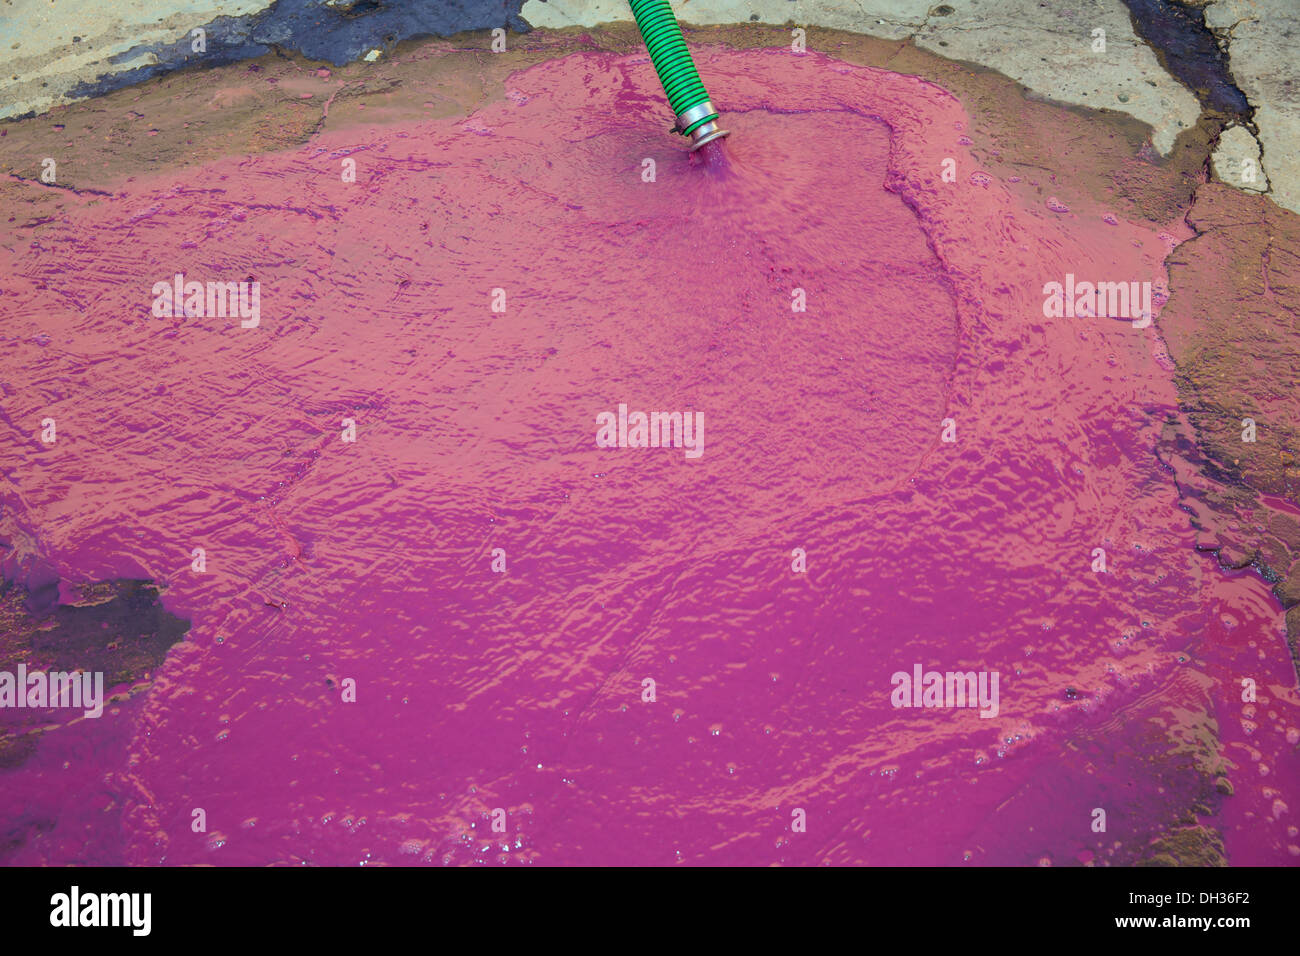 Reich an Weinsäure in rosa Farbe Magenta, die Reinigung der Bodensatz der Fässer Wein vinasse Stockfoto